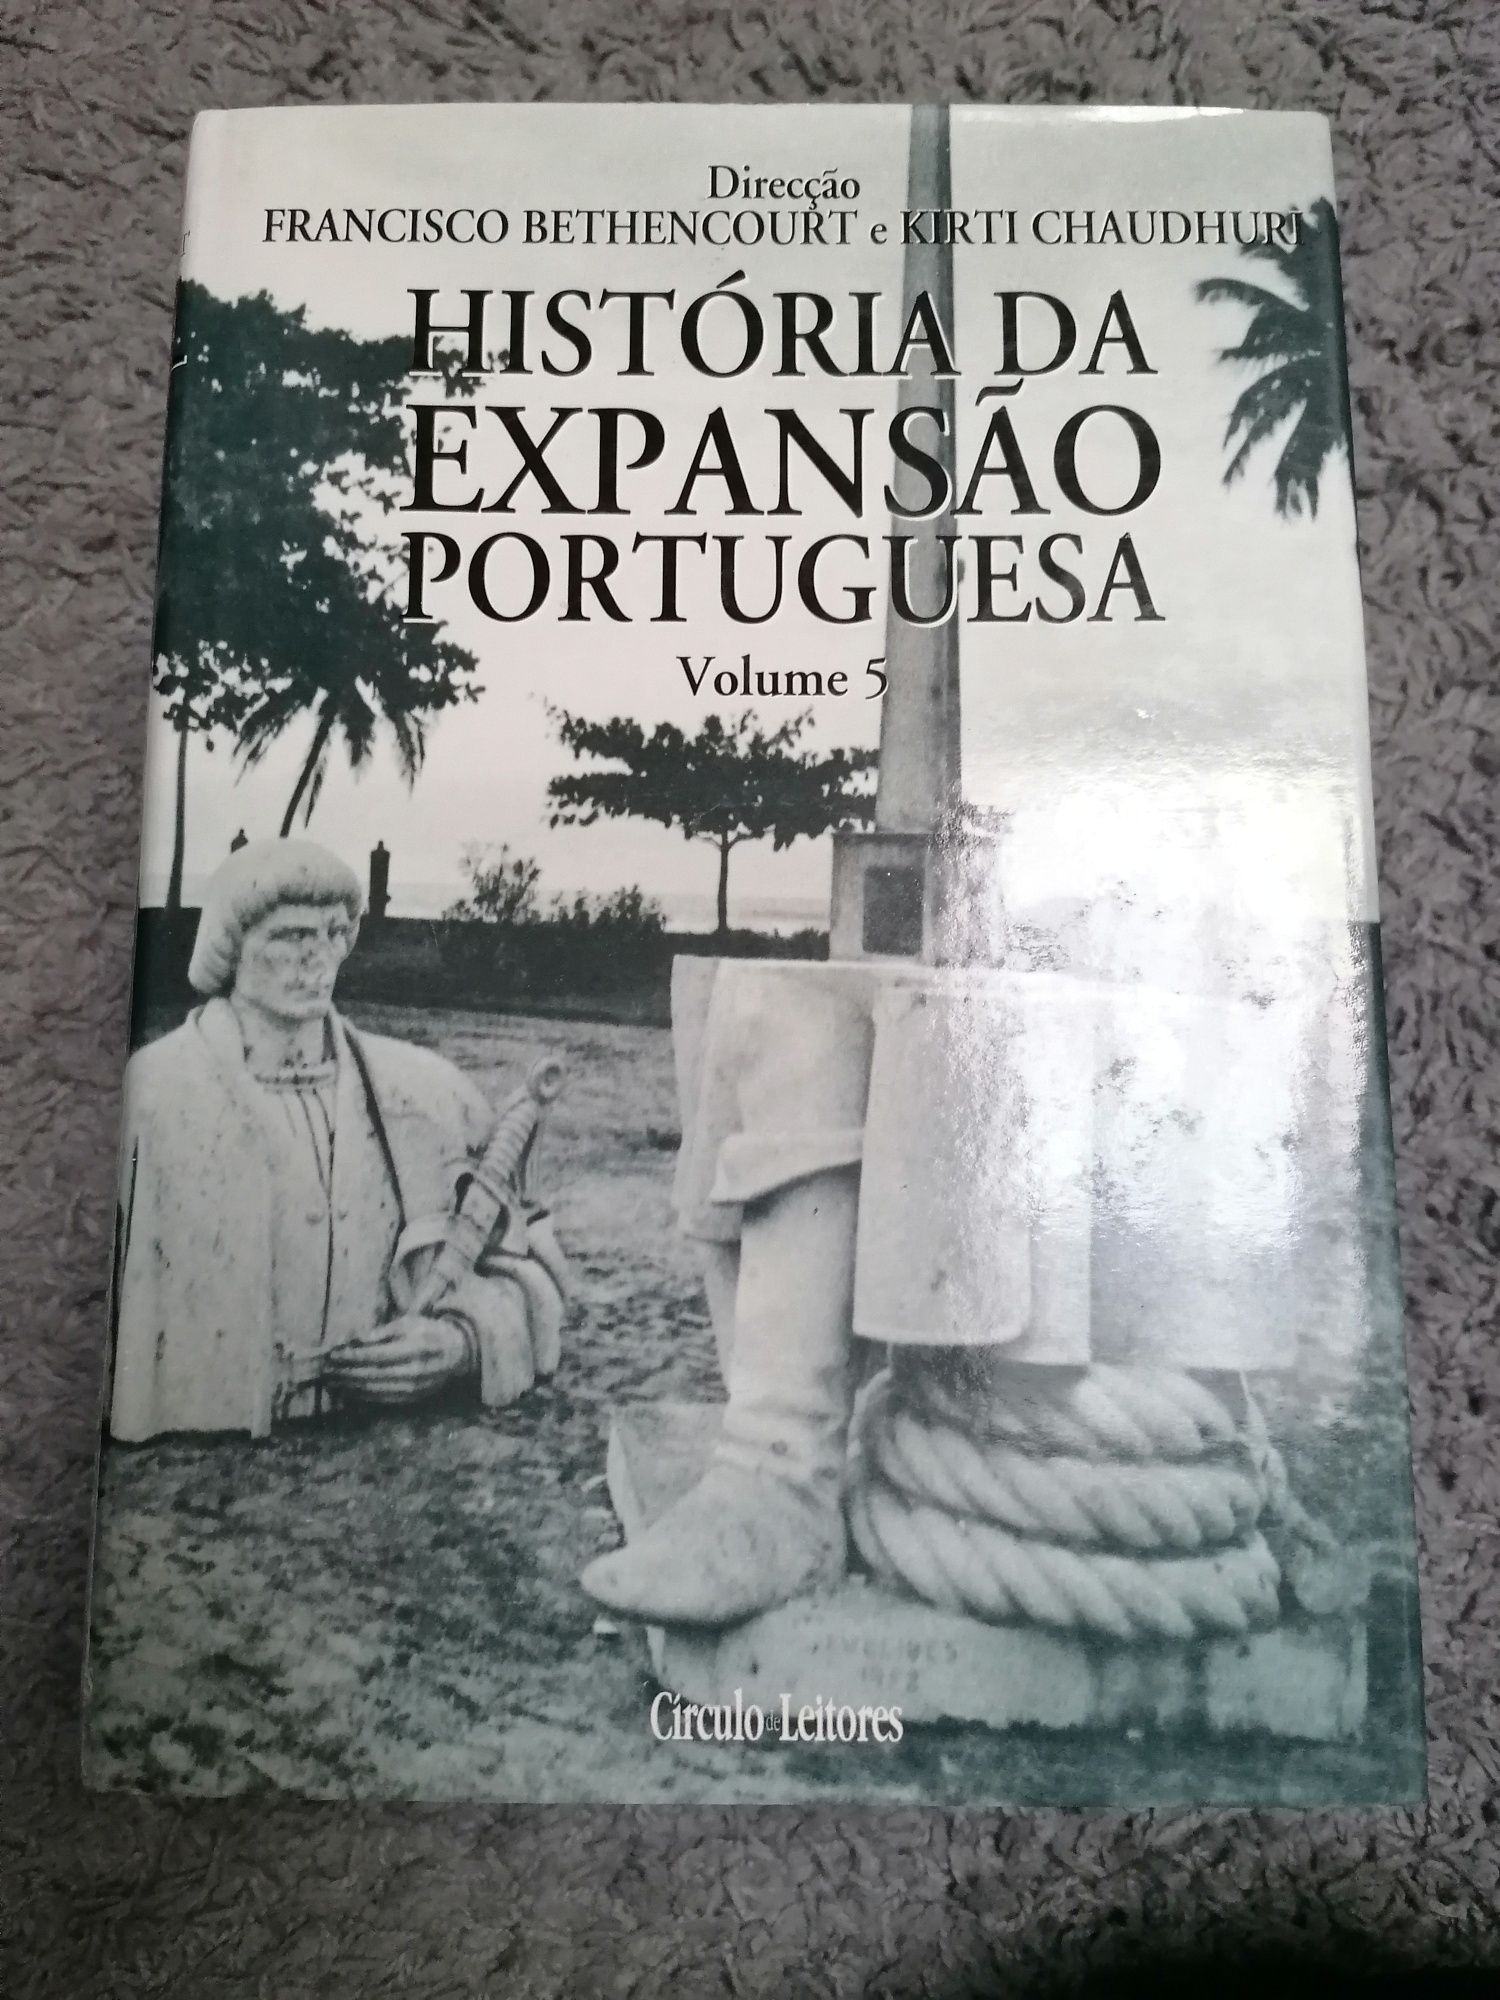 Coleção "História da expansão portuguesa"